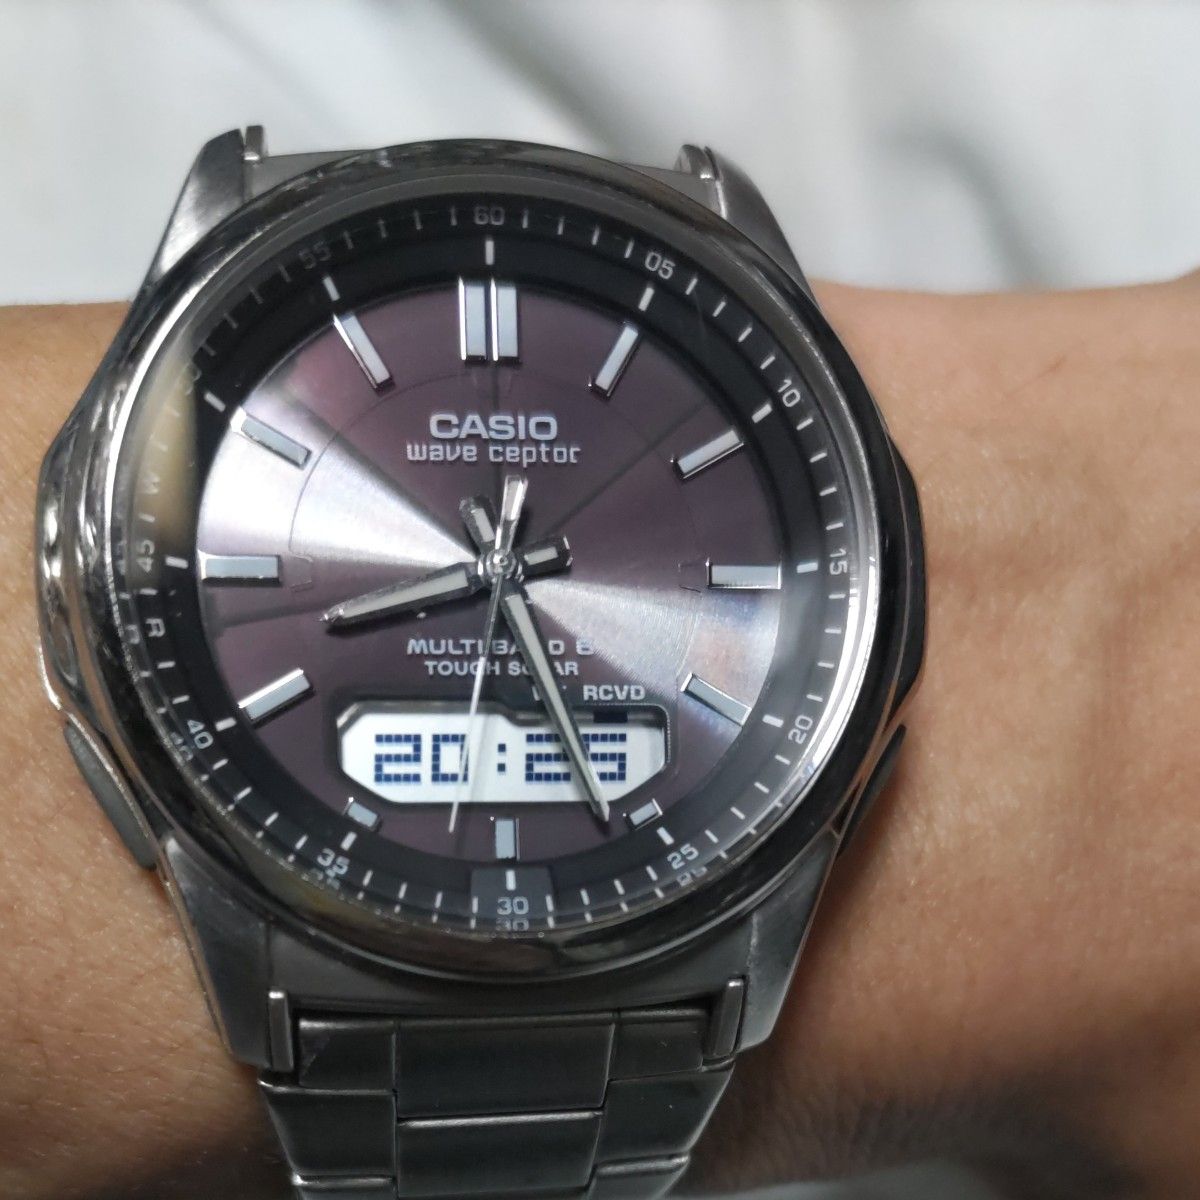 CASIO カシオ 腕時計 ウェーブセプター wave ceptor 電波ソーラー タフソーラー ソーラー アナデジ 